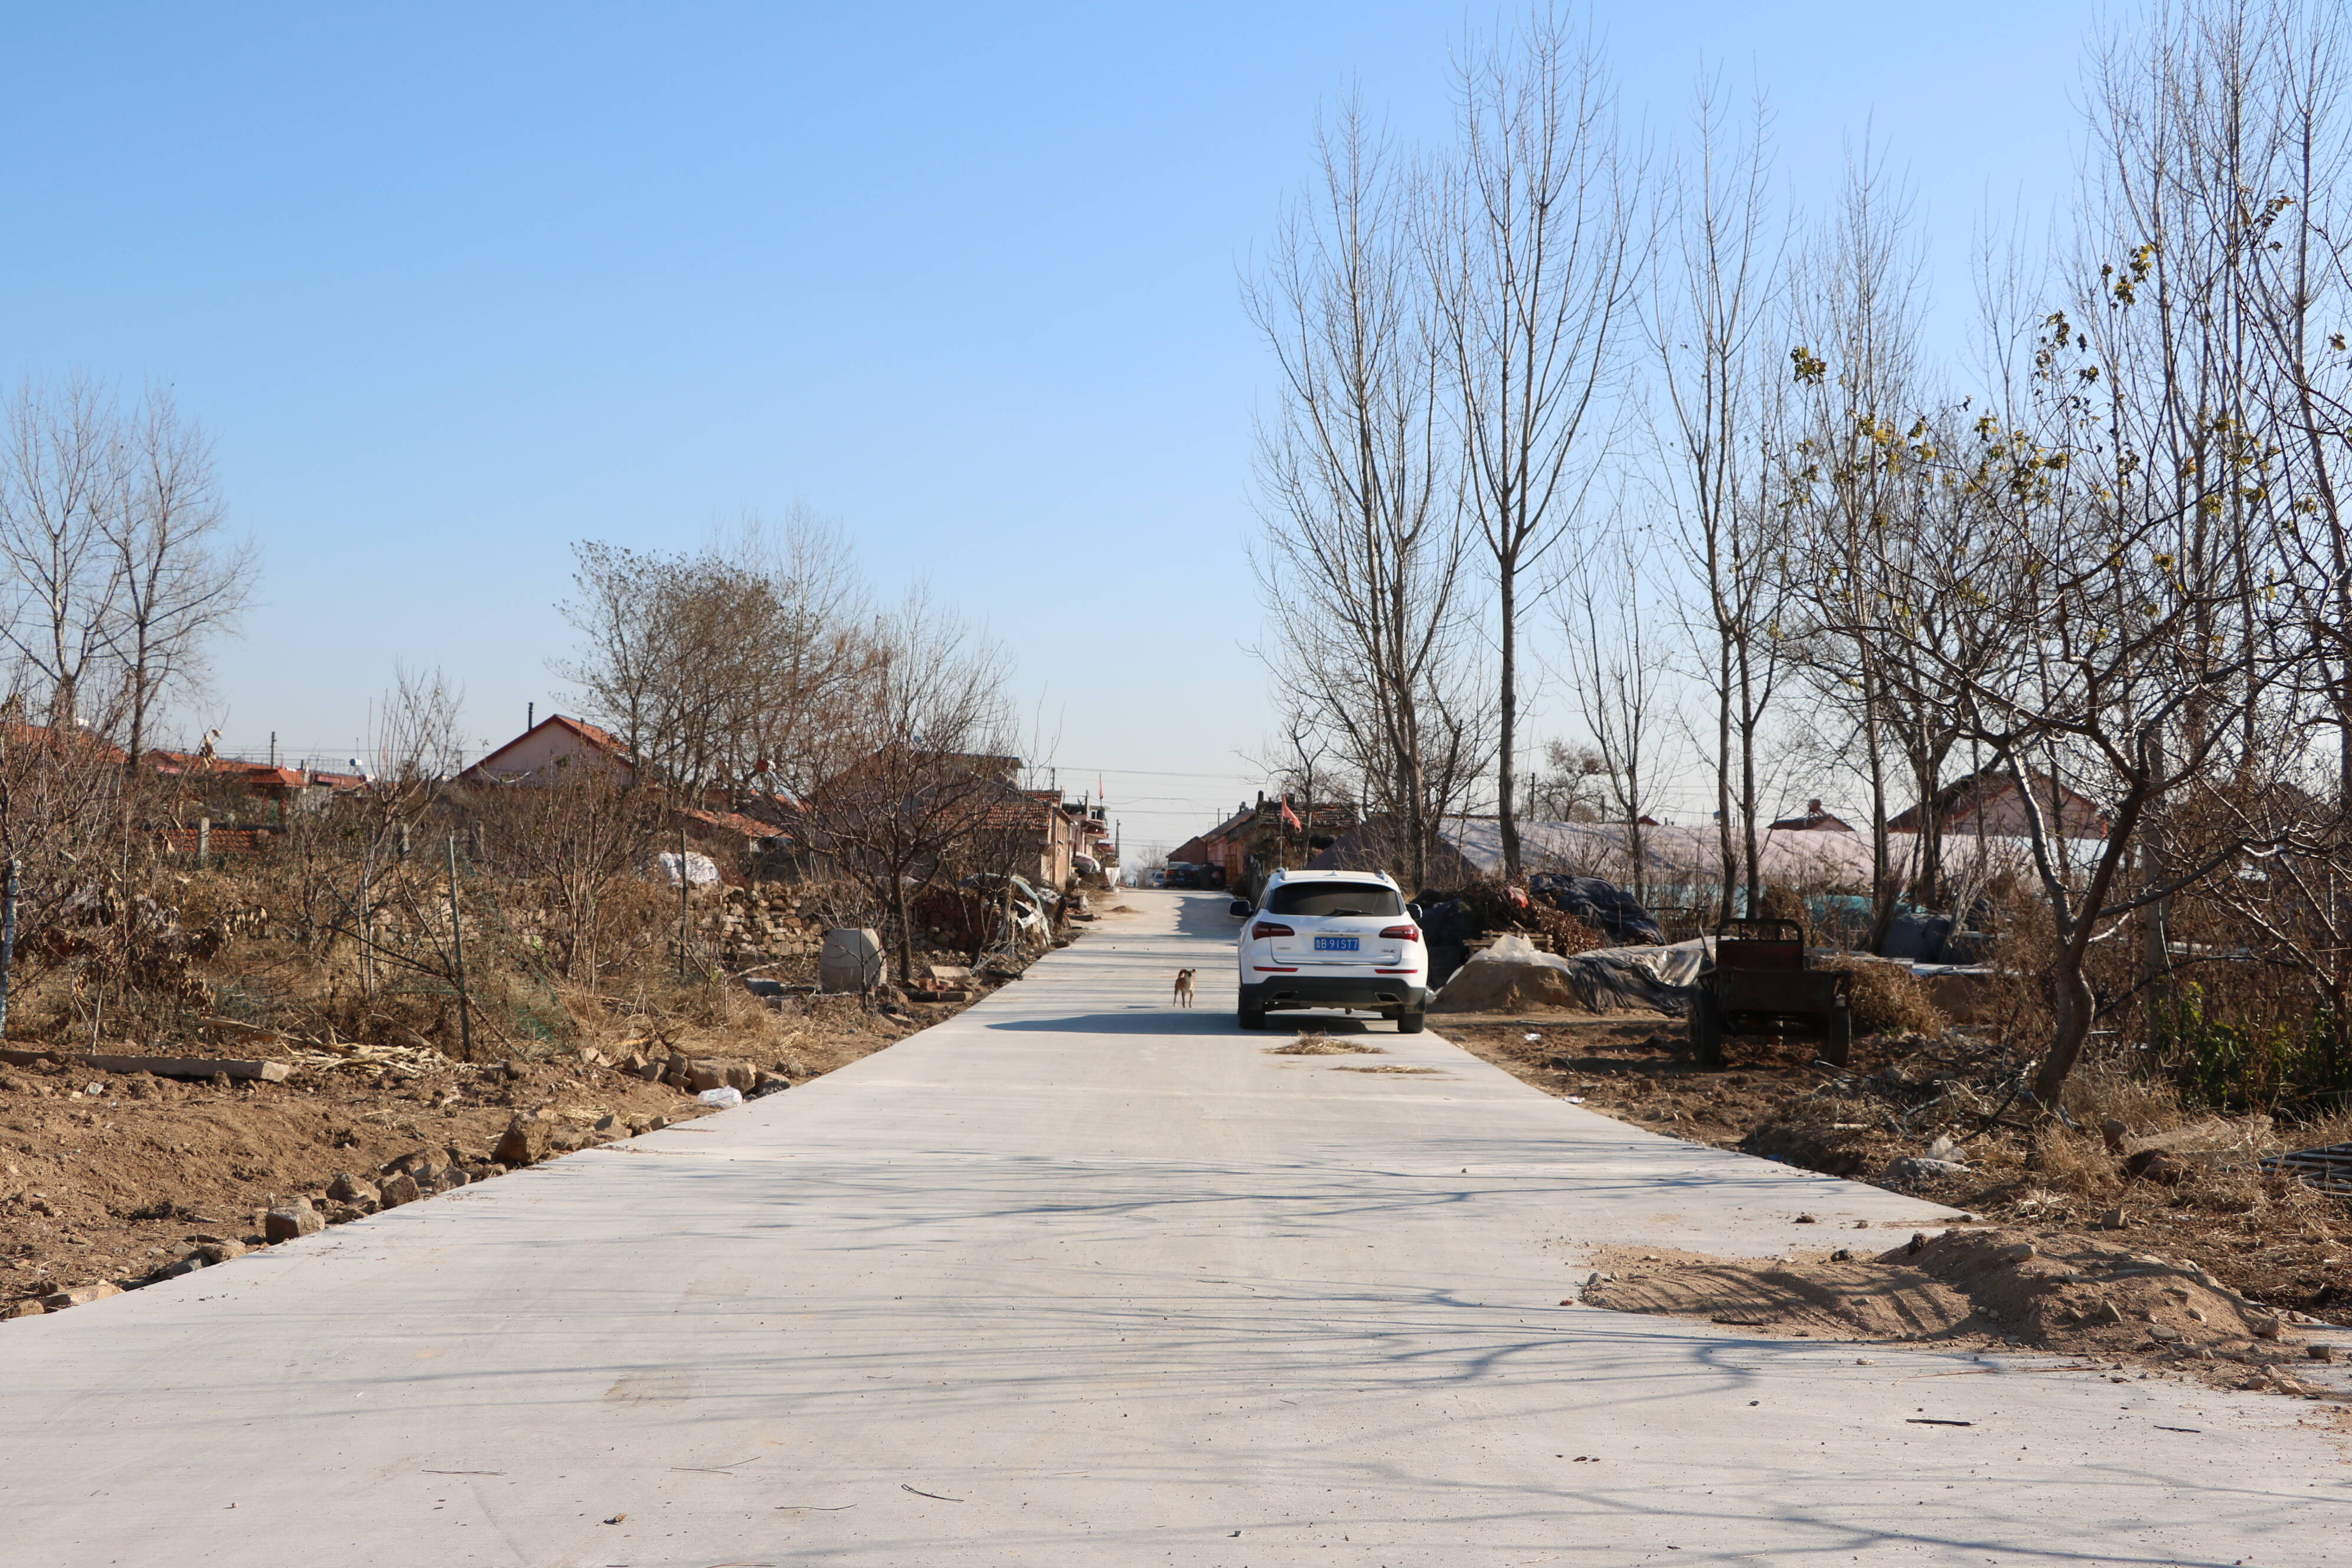 通往村庄的道路整修一新。记者 董梅雪 报道